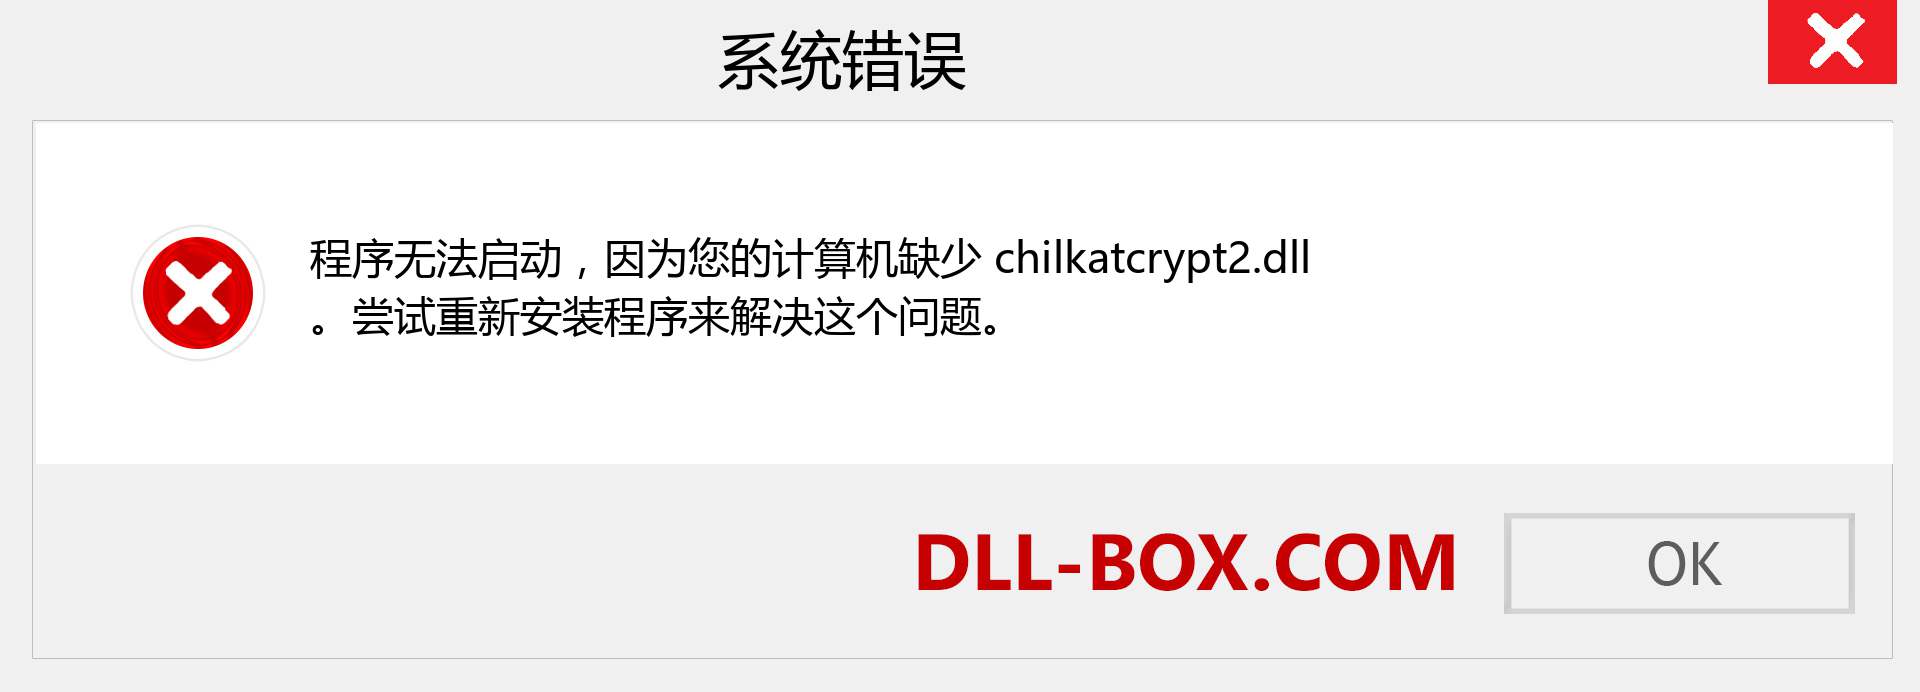 chilkatcrypt2.dll 文件丢失？。 适用于 Windows 7、8、10 的下载 - 修复 Windows、照片、图像上的 chilkatcrypt2 dll 丢失错误